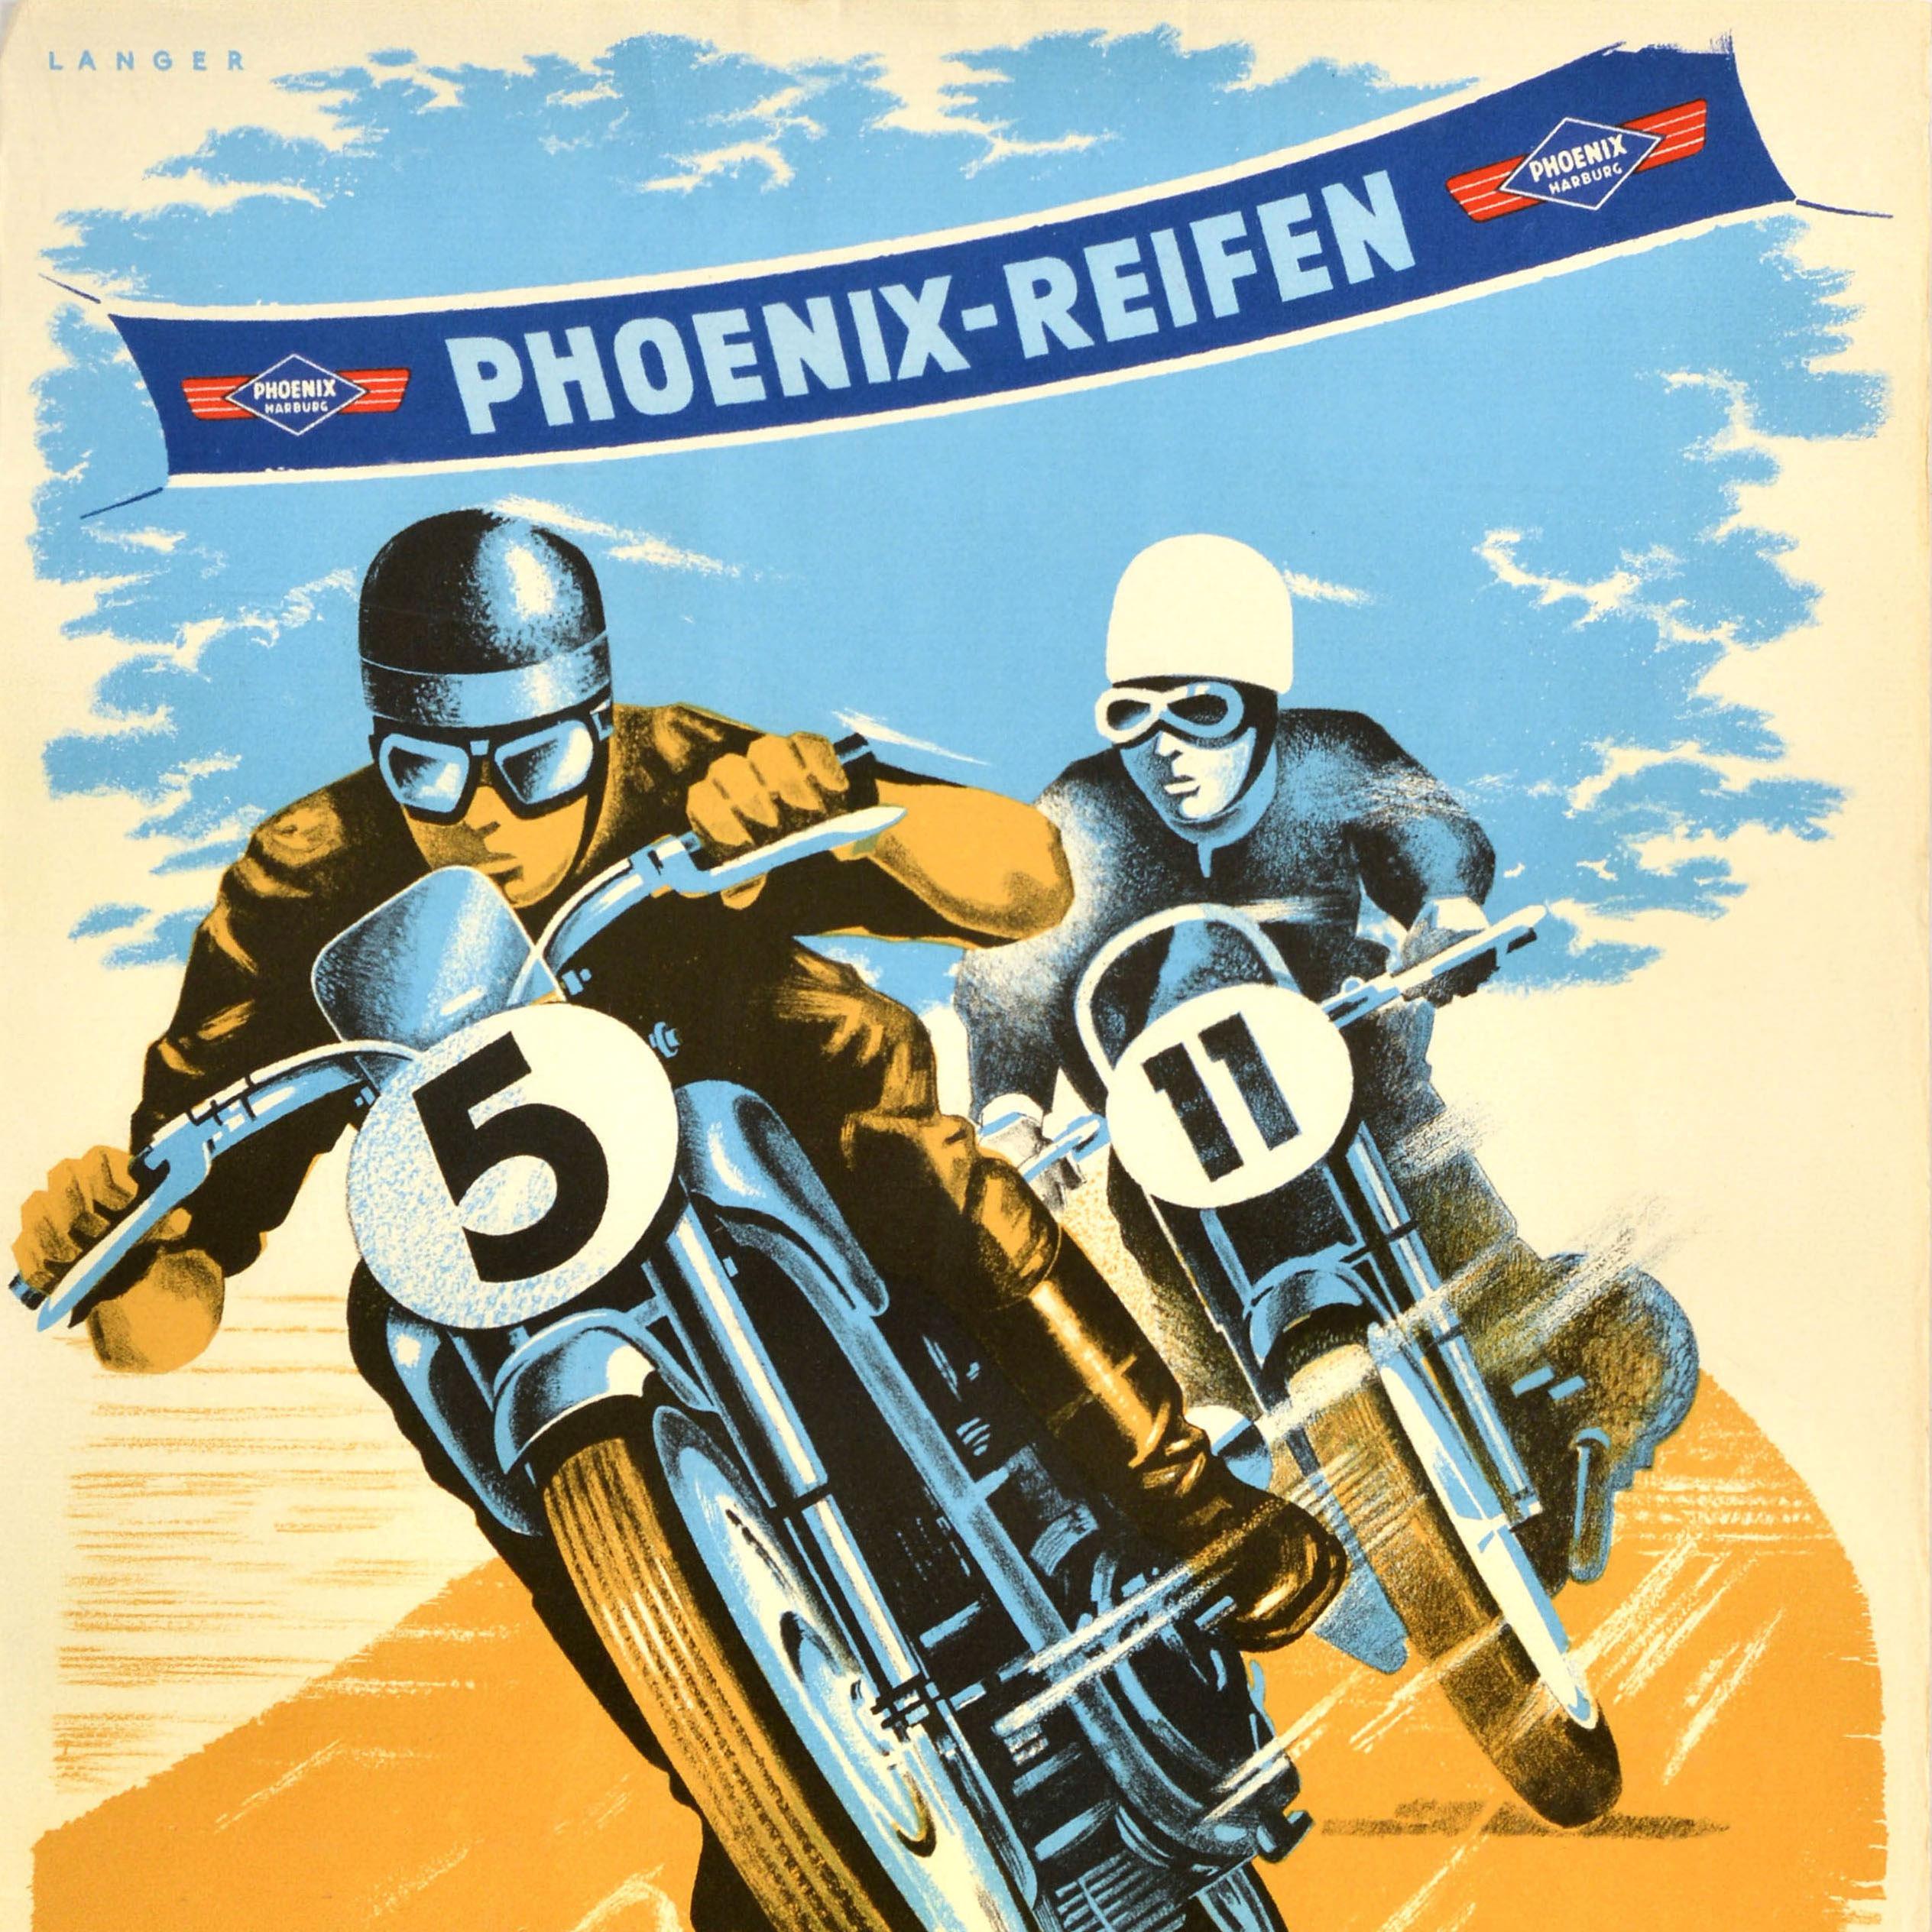 Original Vintage Motorsport Poster Motorcycle Race Phoenix Reifen 1951 Kellersee - Gray Print by Unknown